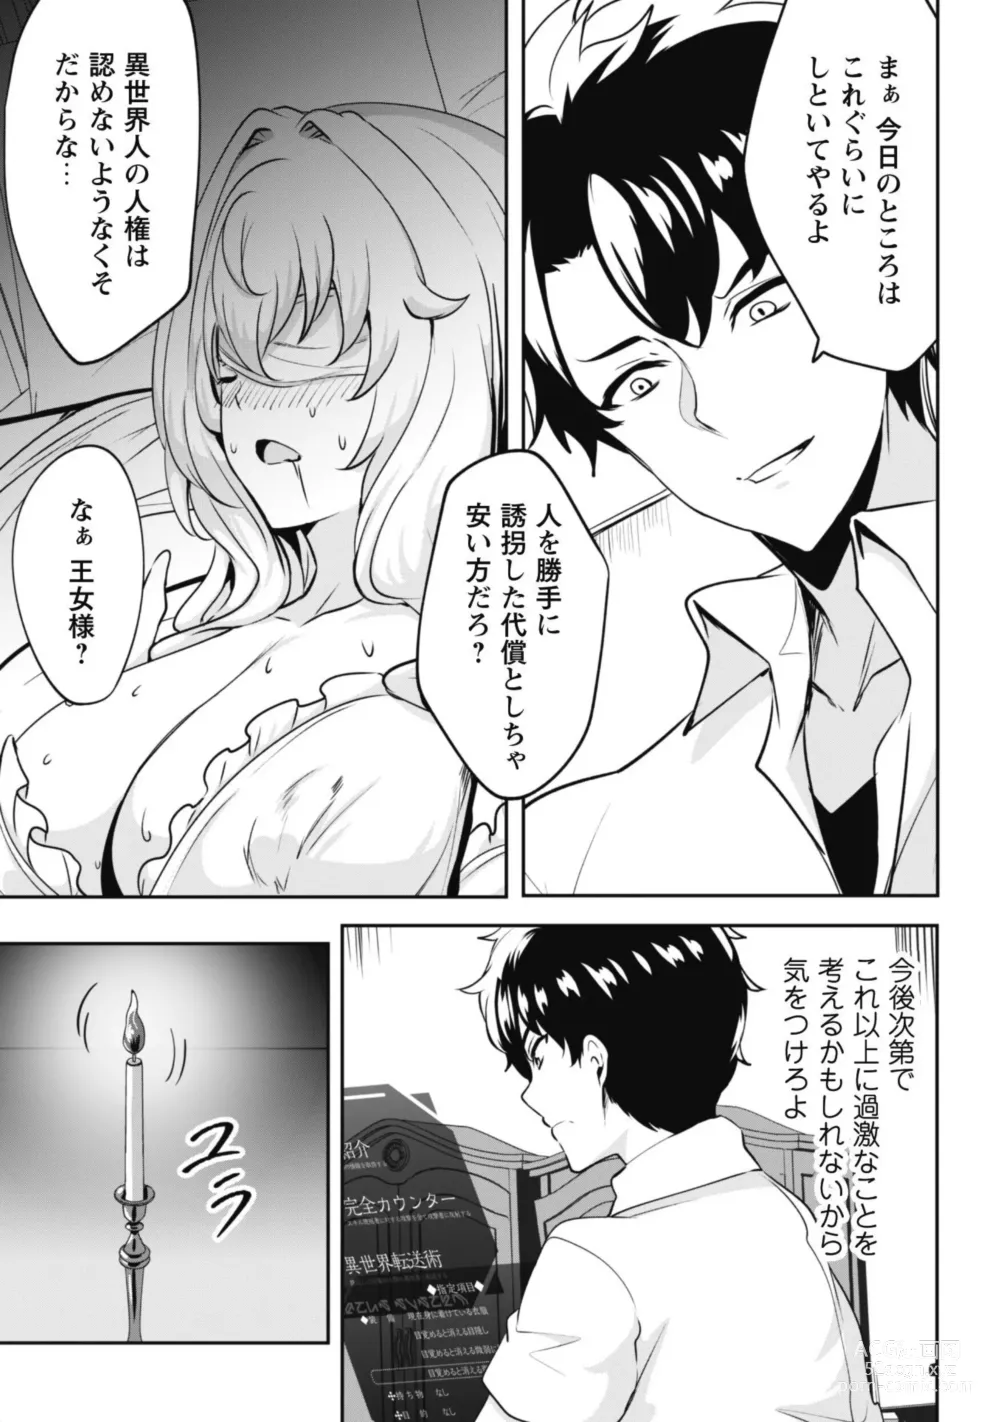 Page 61 of manga Hangyaku no Yūsha 〜 Sukiru o Tsukatte Haraguro ōjo no Kokoro to Karada o Shōaku seyo 〜 1-2